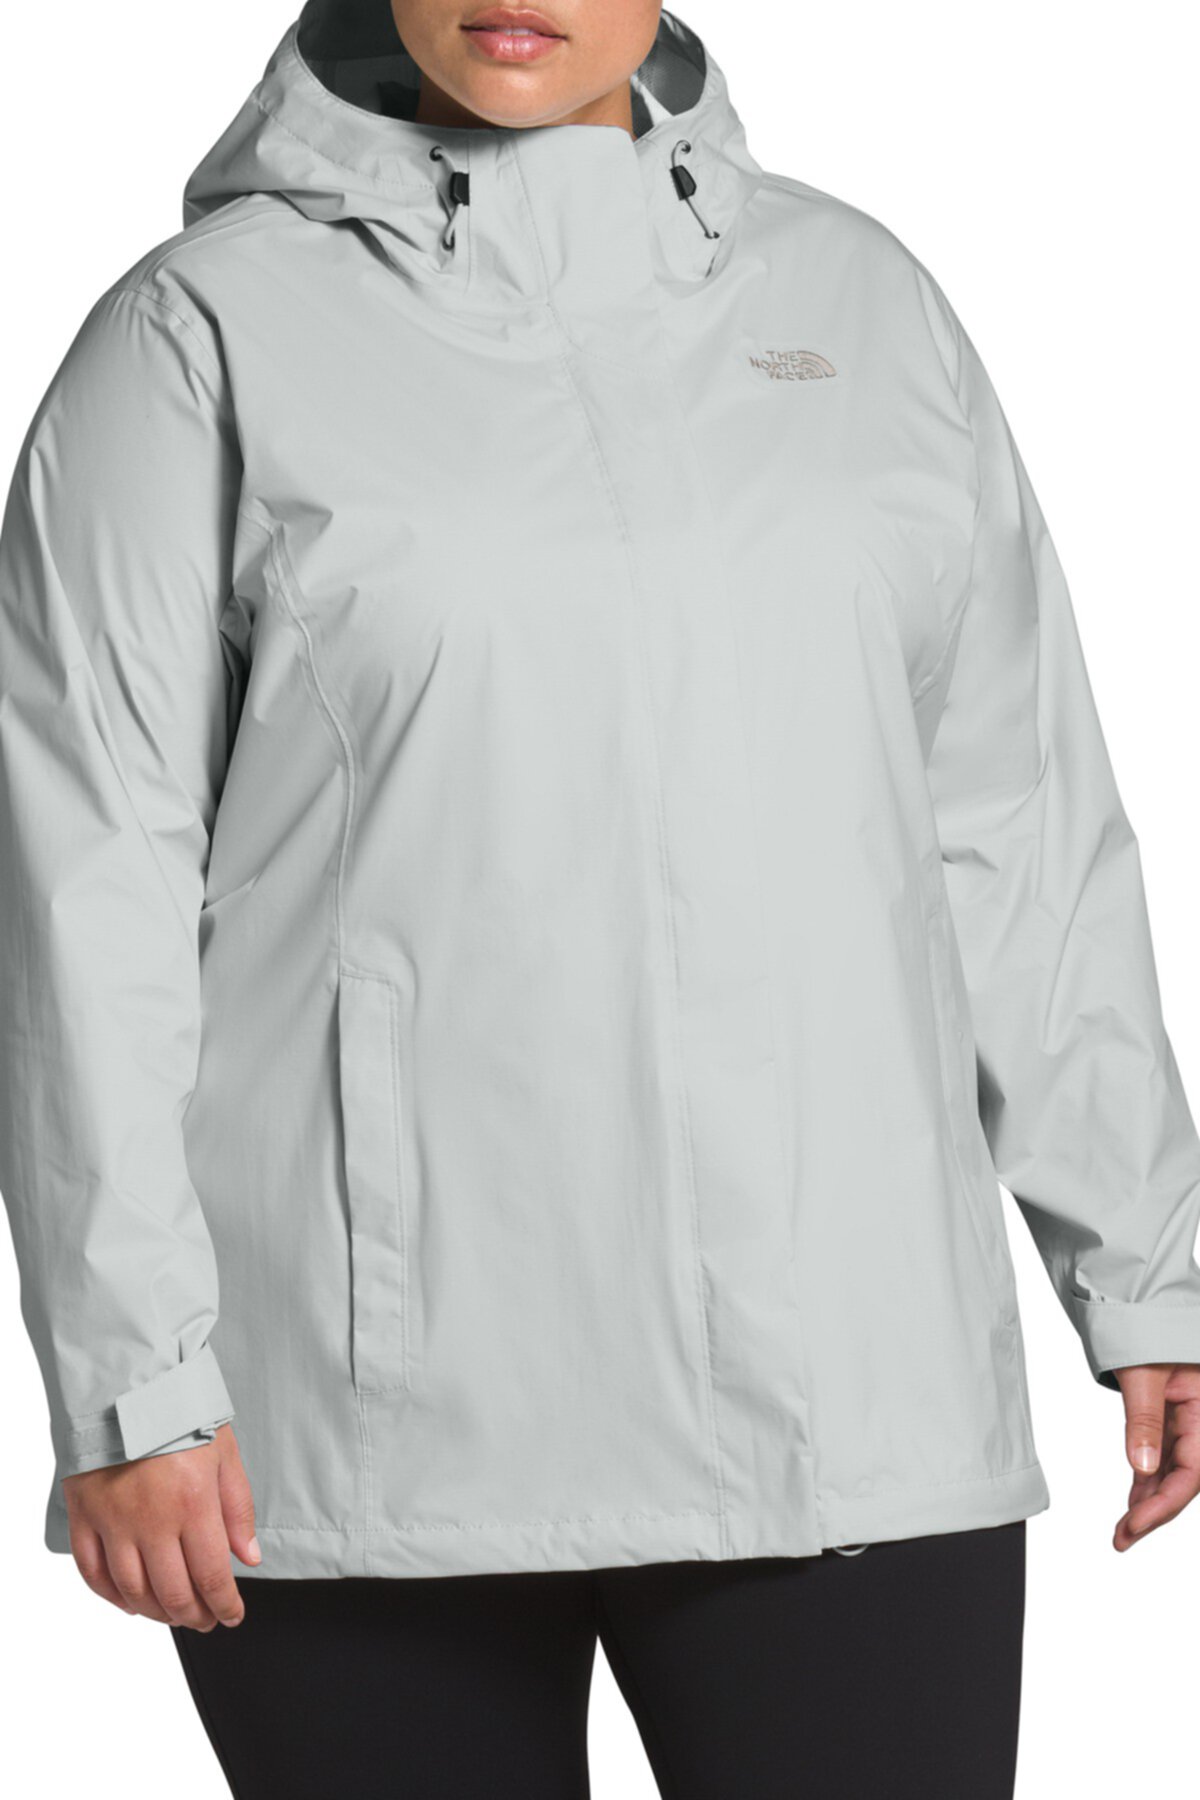 Куртка Venture с капюшоном (большие размеры) The North Face